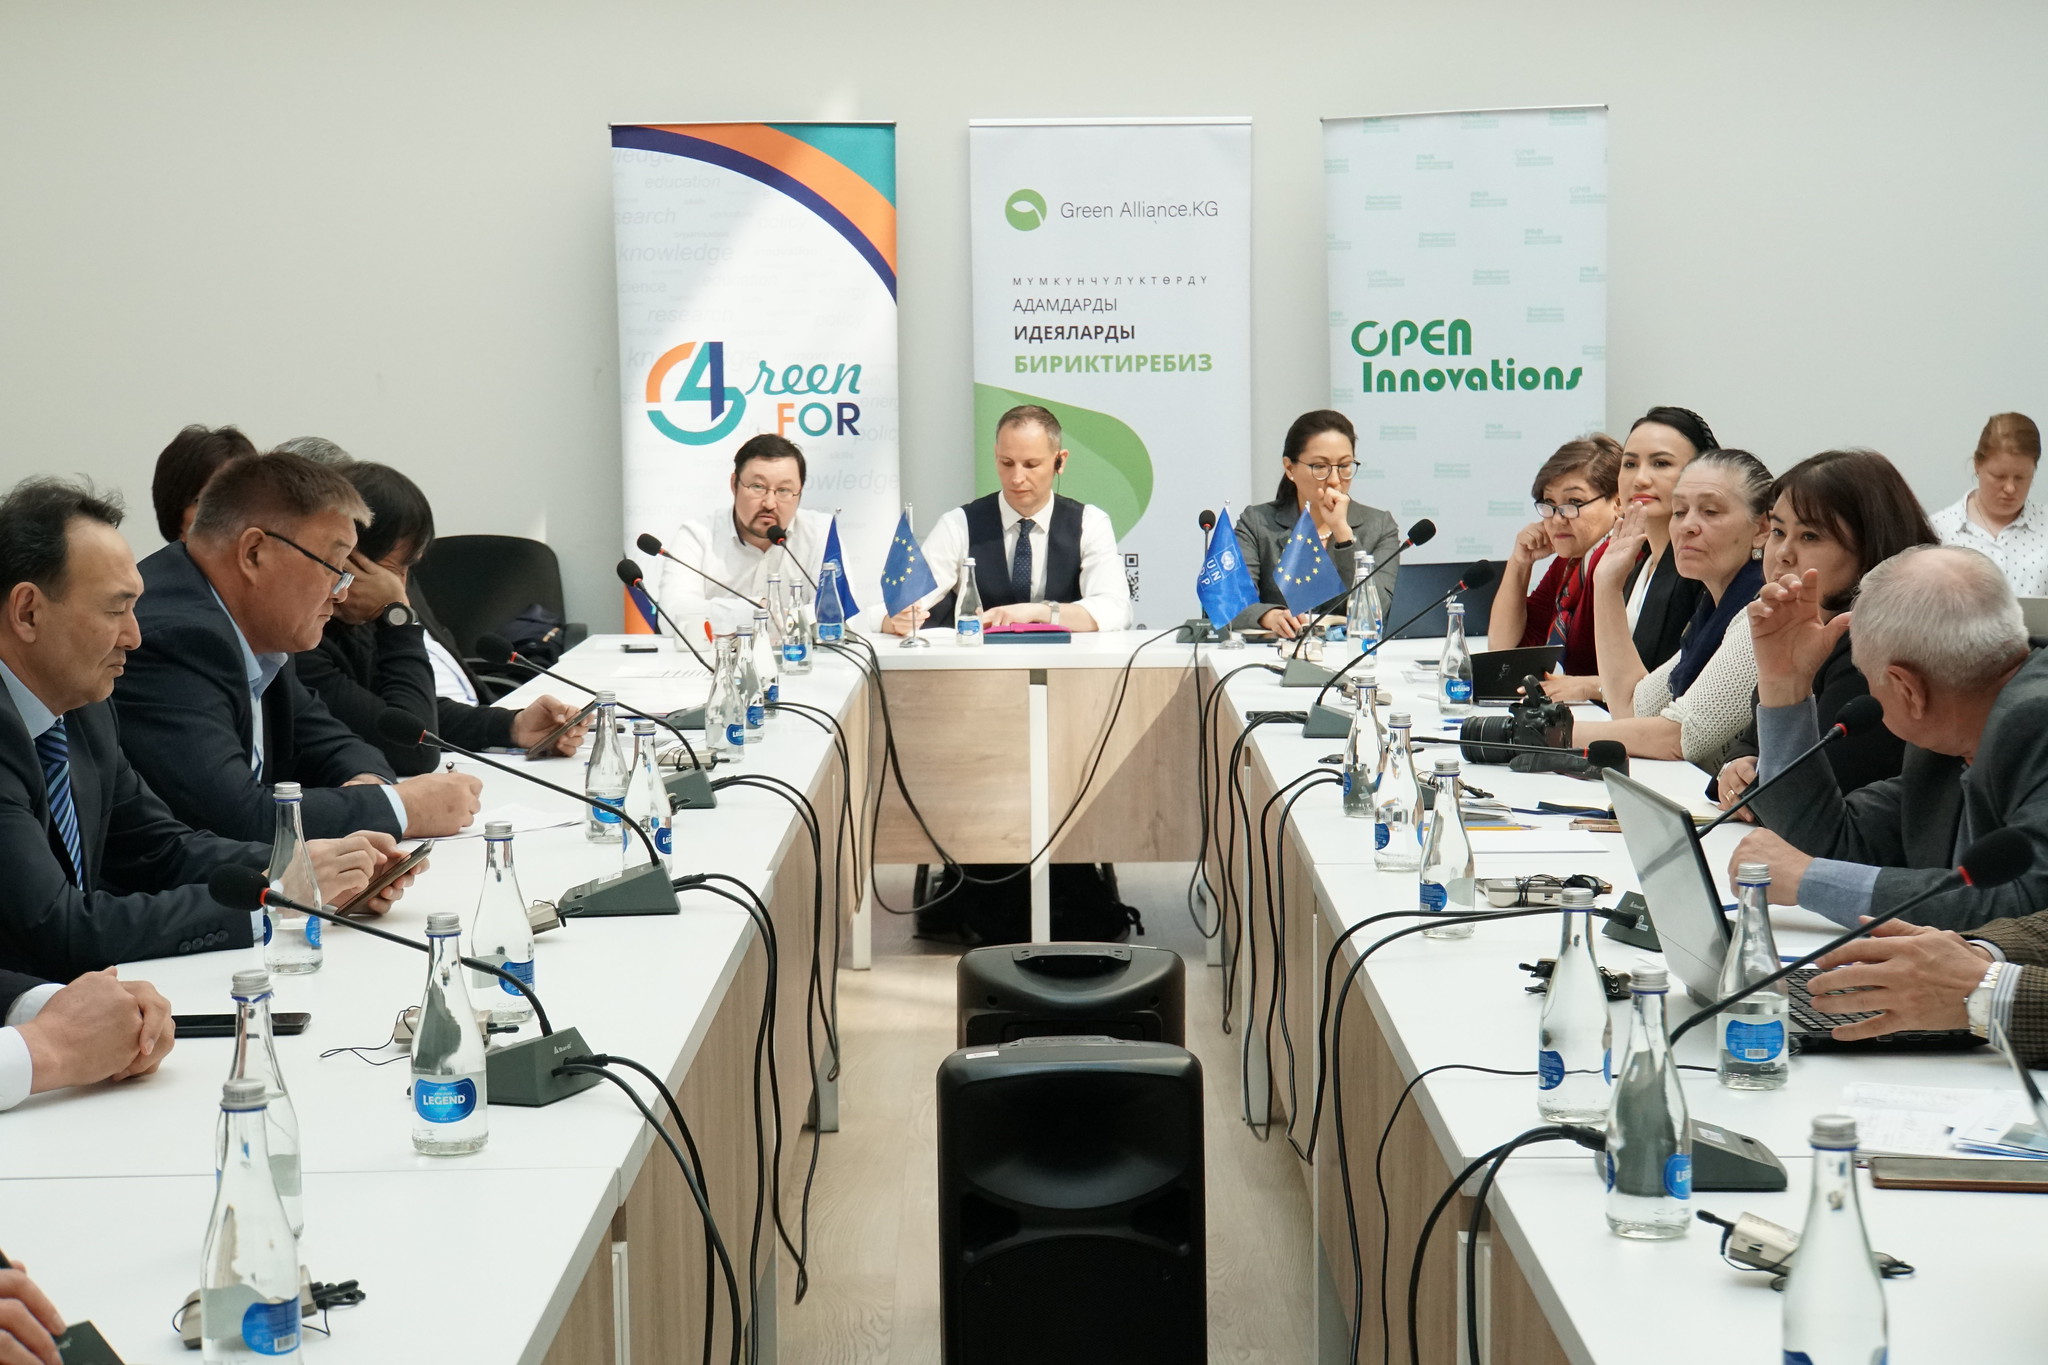 Зеленый Альянс Кыргызстана, в партнерстве с Open Innovations и Green4, при поддержке ПРООН провел пост-конференционную дискуссию